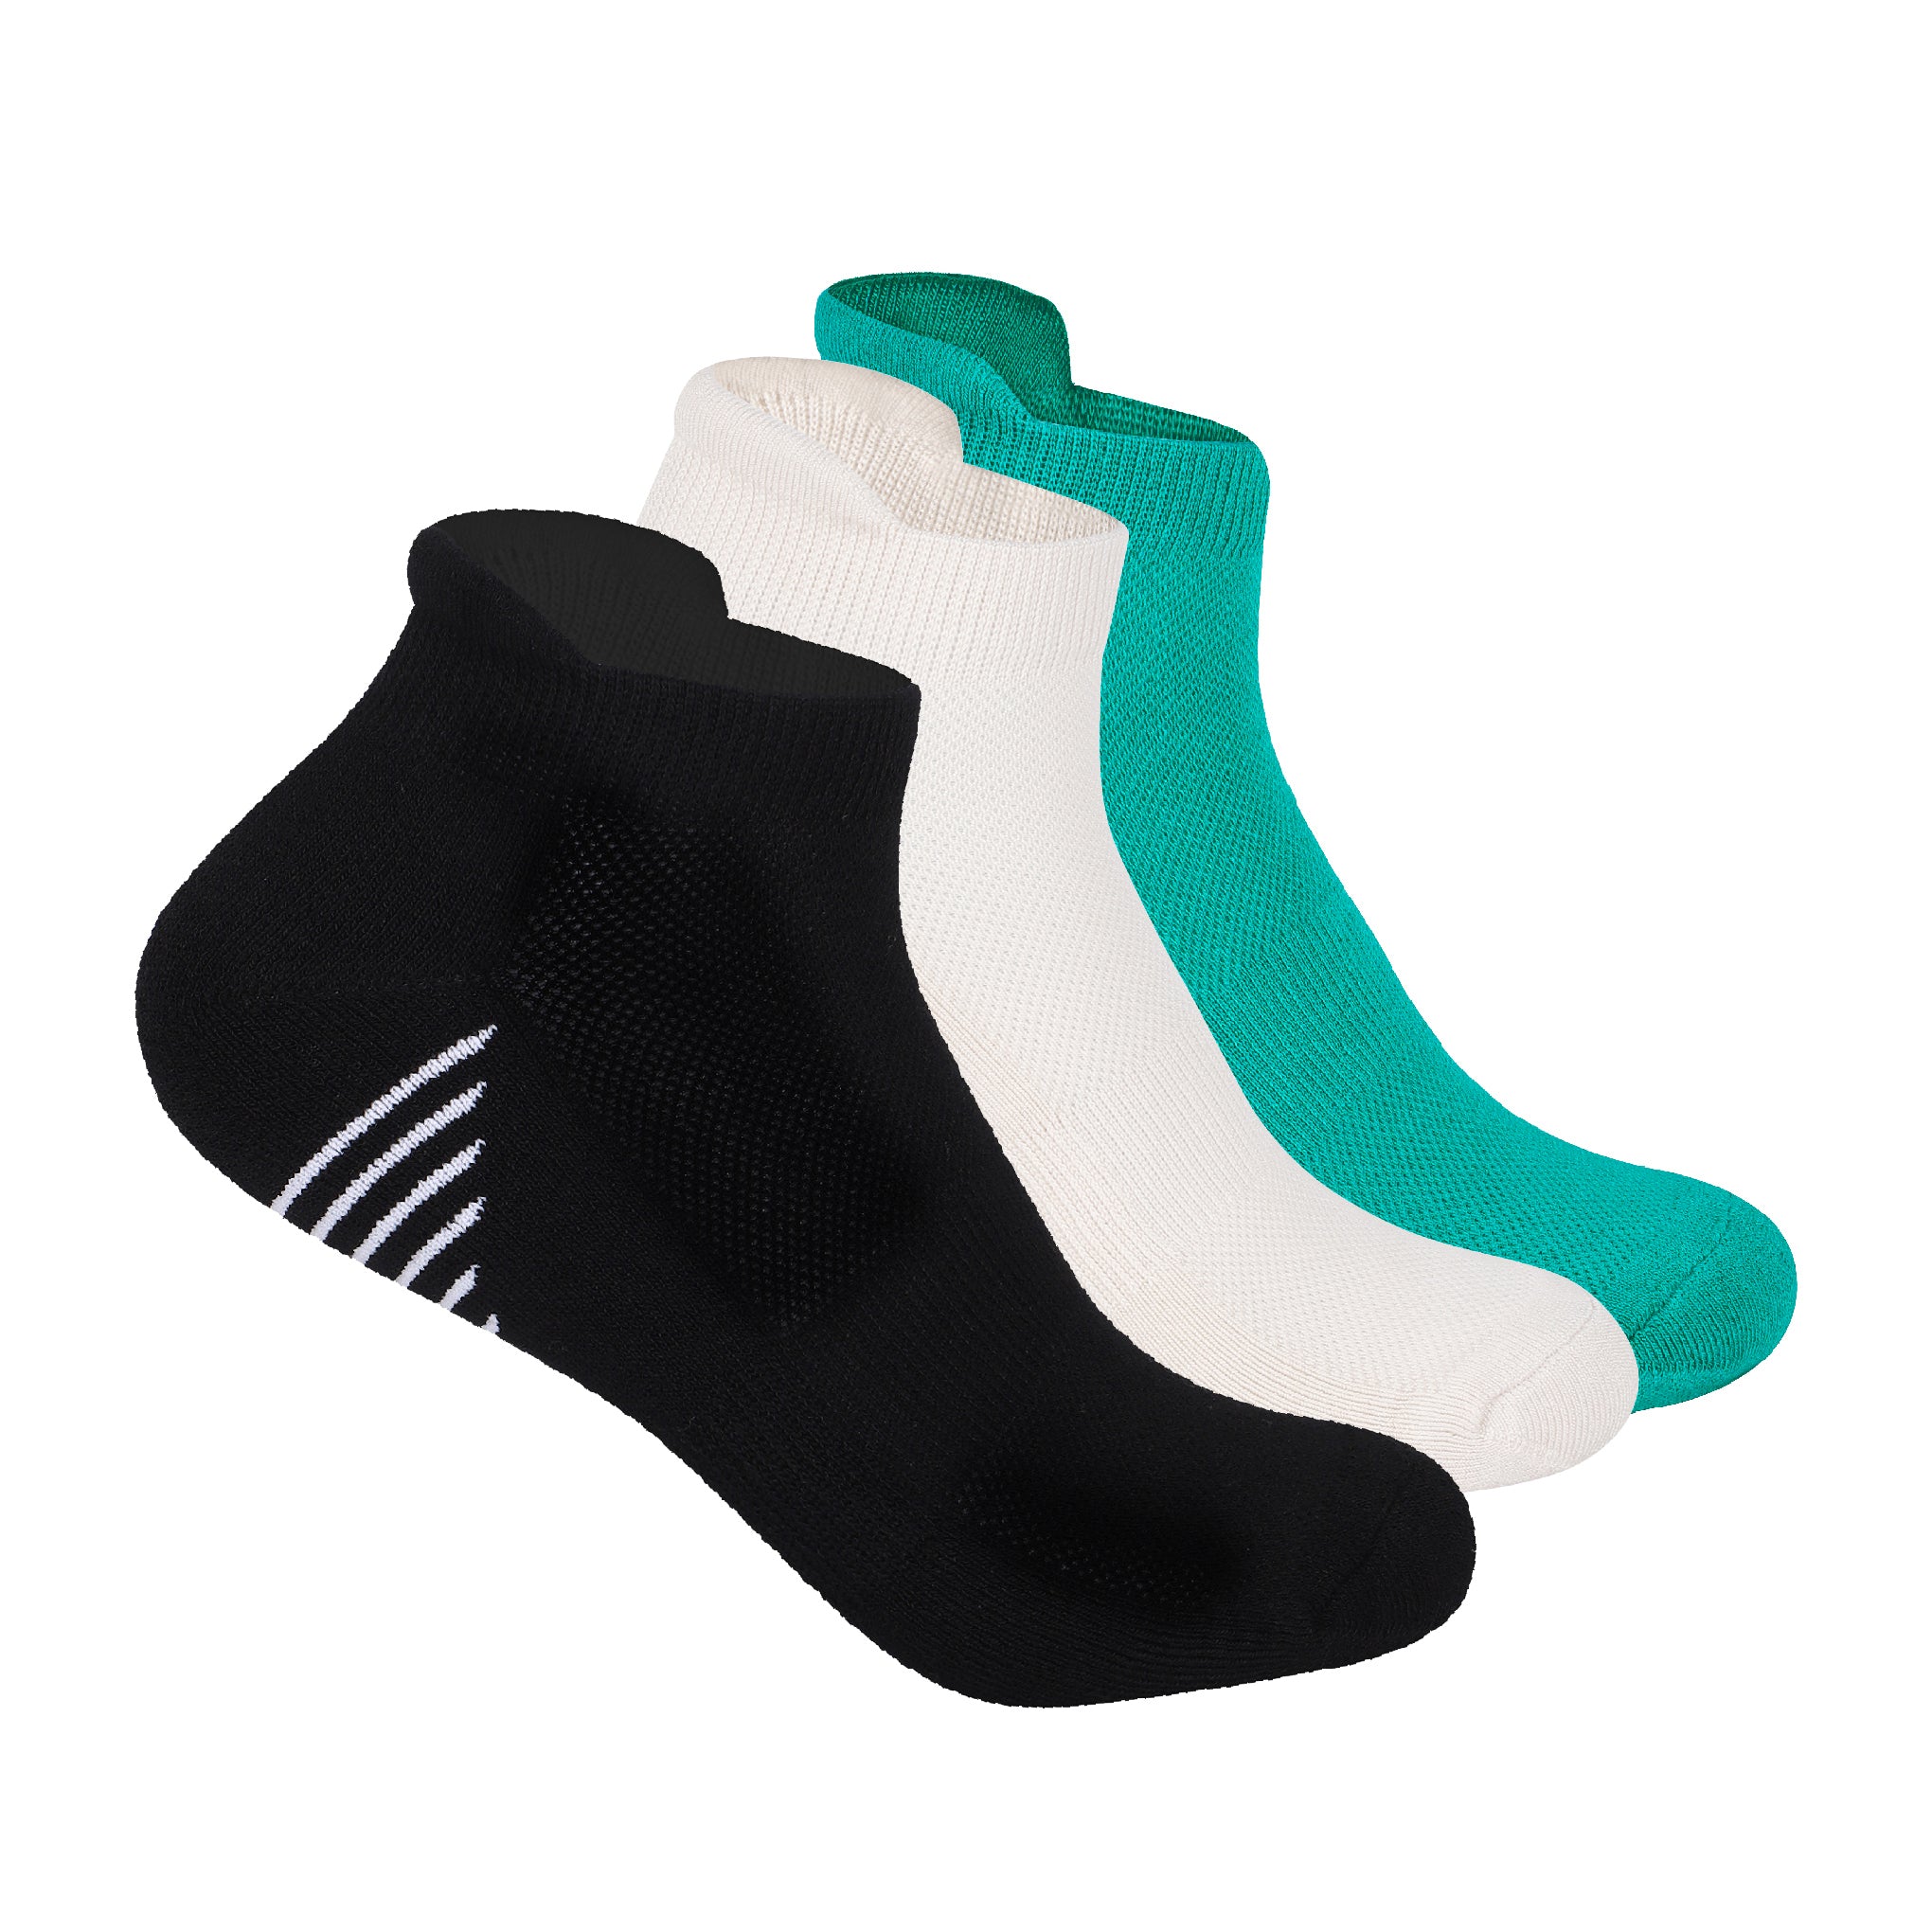 Pro Tech Set Of 3 Bamboo Socks For Men